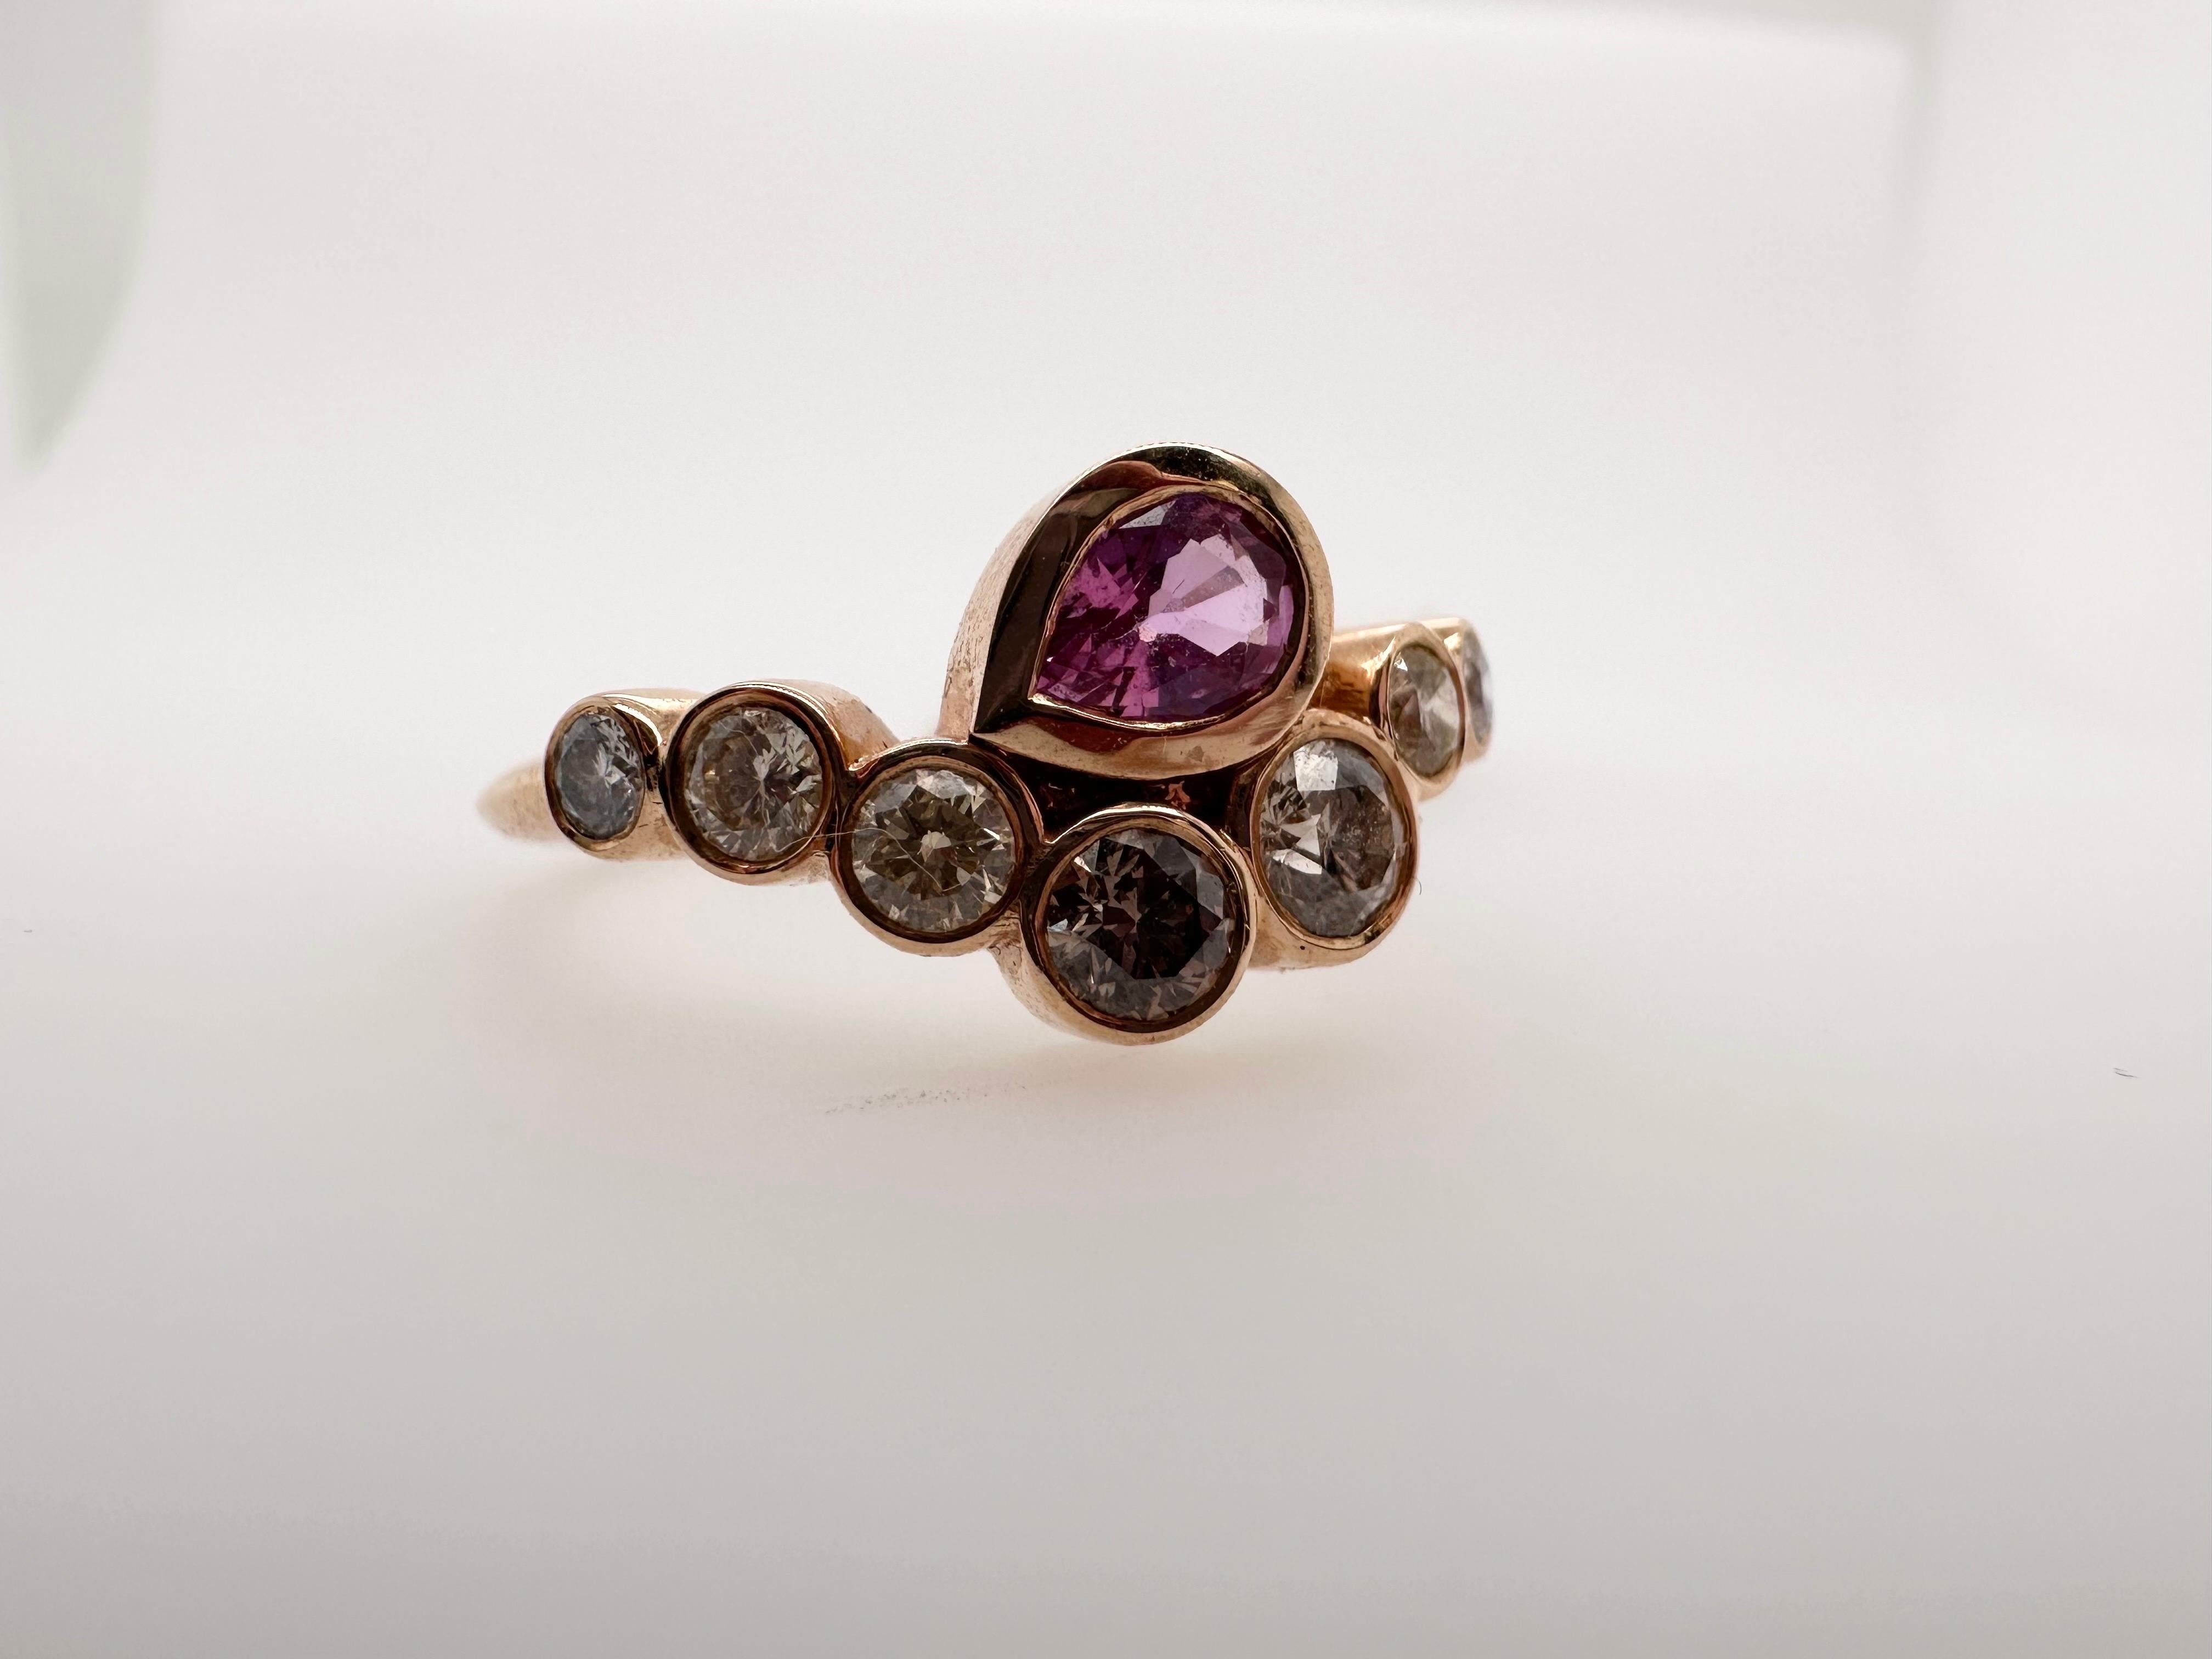 Exquisiter Ring mit rosafarbenem Saphir und Diamanten aus 14 Kt. Roségold, in einem zeitgenössischen Böser-Augen-Stil gefertigt, sehr interessante künstlerische Vision des Rings. 

Metall Typ: 14KT

Natürliche(r) Saphir(e):
Farbe: Rosa
Schnitt: